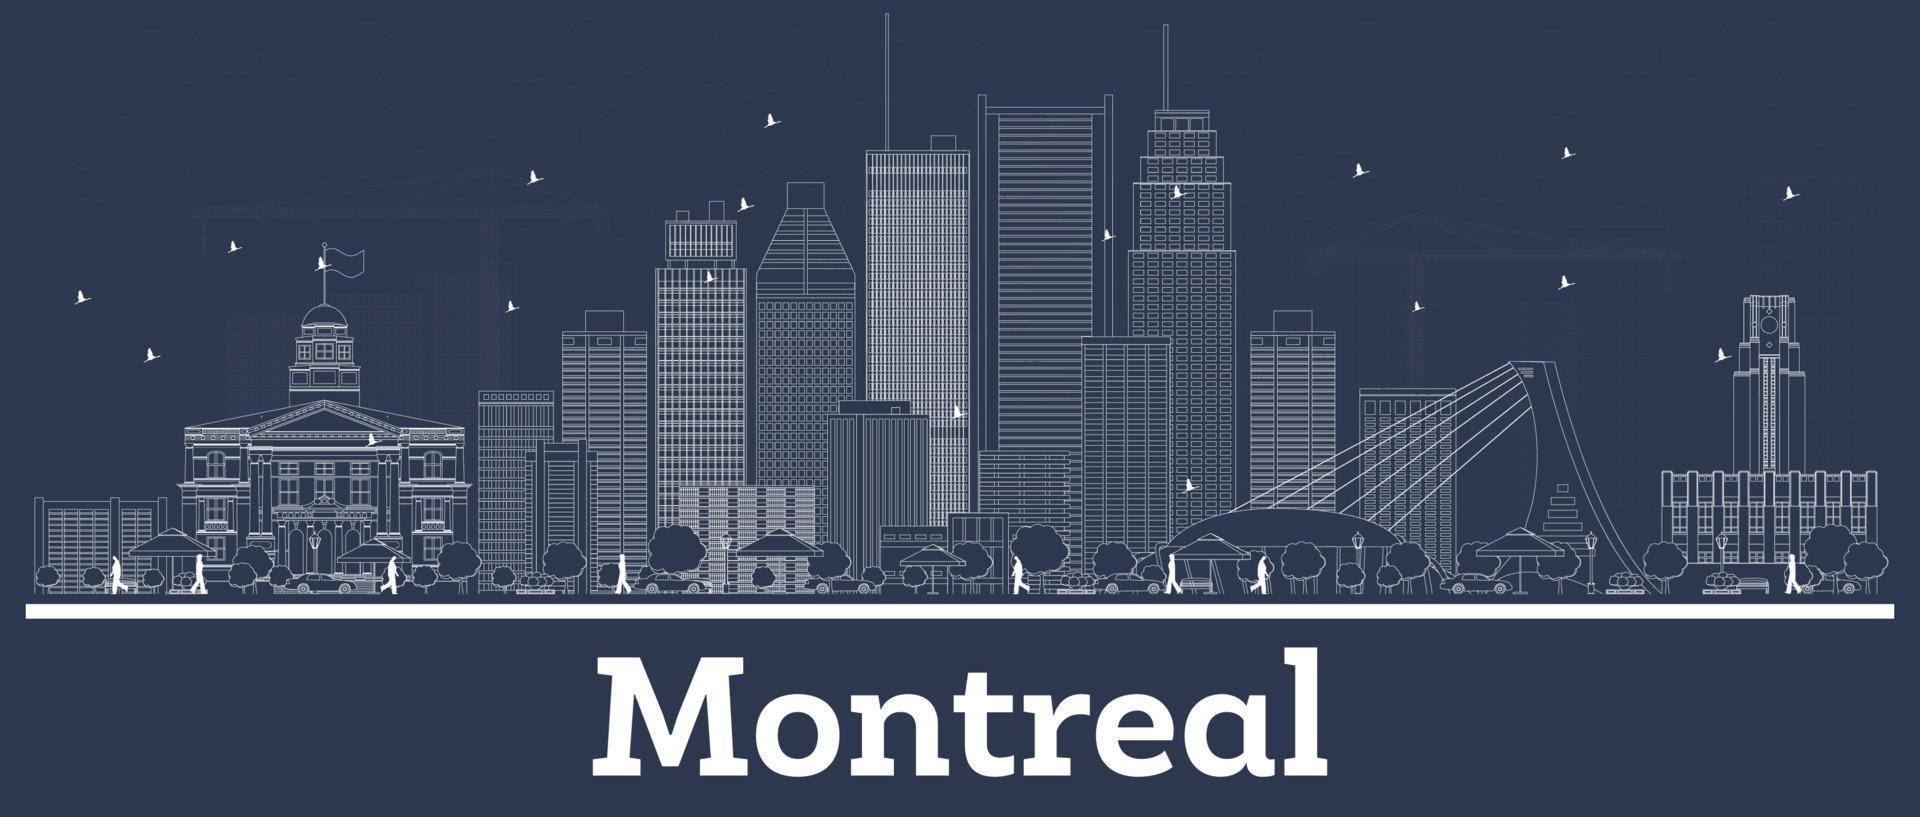 delineie o horizonte da cidade de montreal canadá com edifícios brancos. vetor